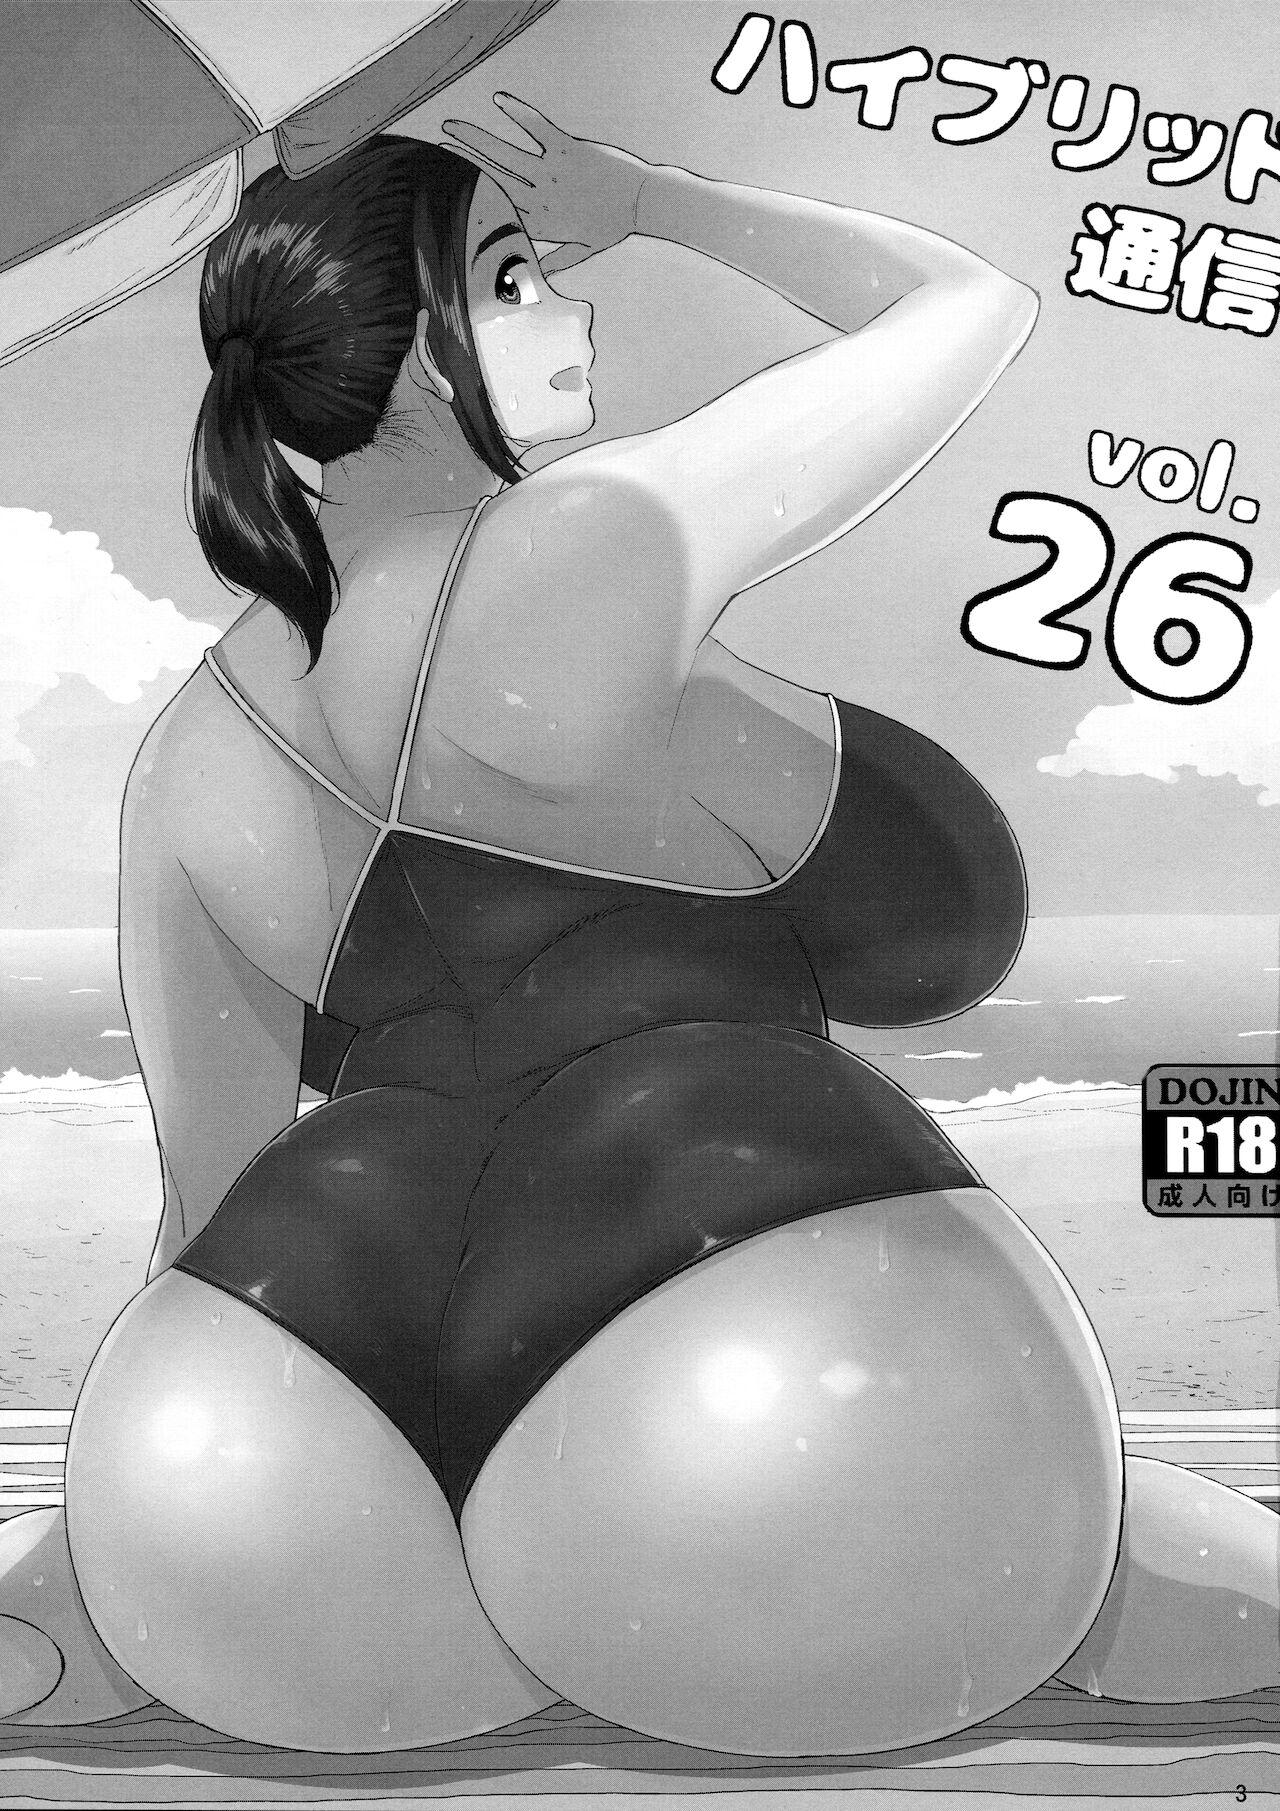 Making Love Porn Hybrid Tsuushin Vol. 26 - Neko no otera no chion san Mujer - Page 2